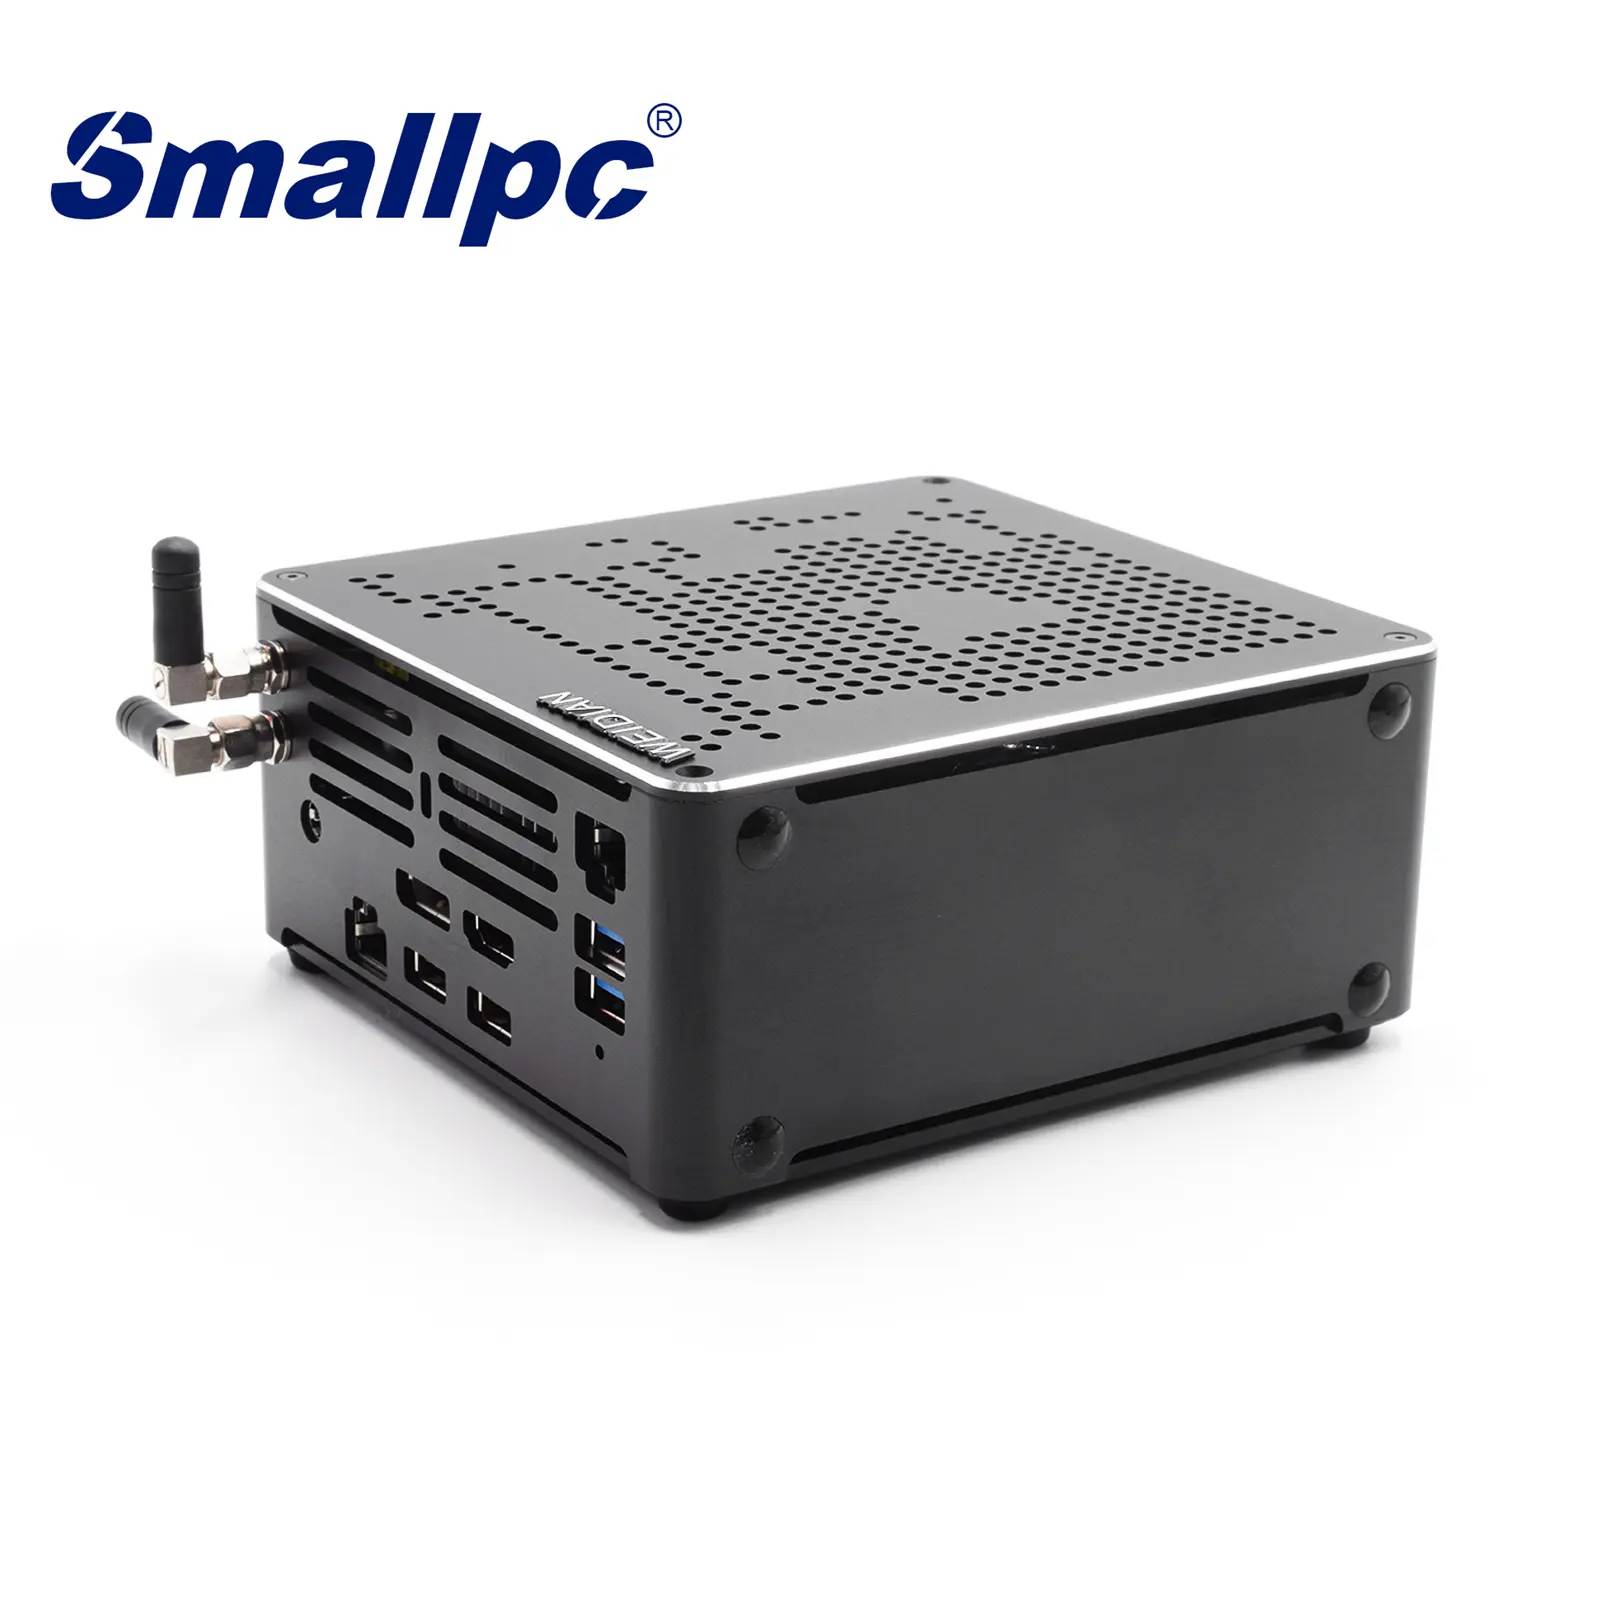 Komputer Mini Smallpc, Produk Kustom Core I7 10th 6 Core 7USB 2Lan 4K 64GB